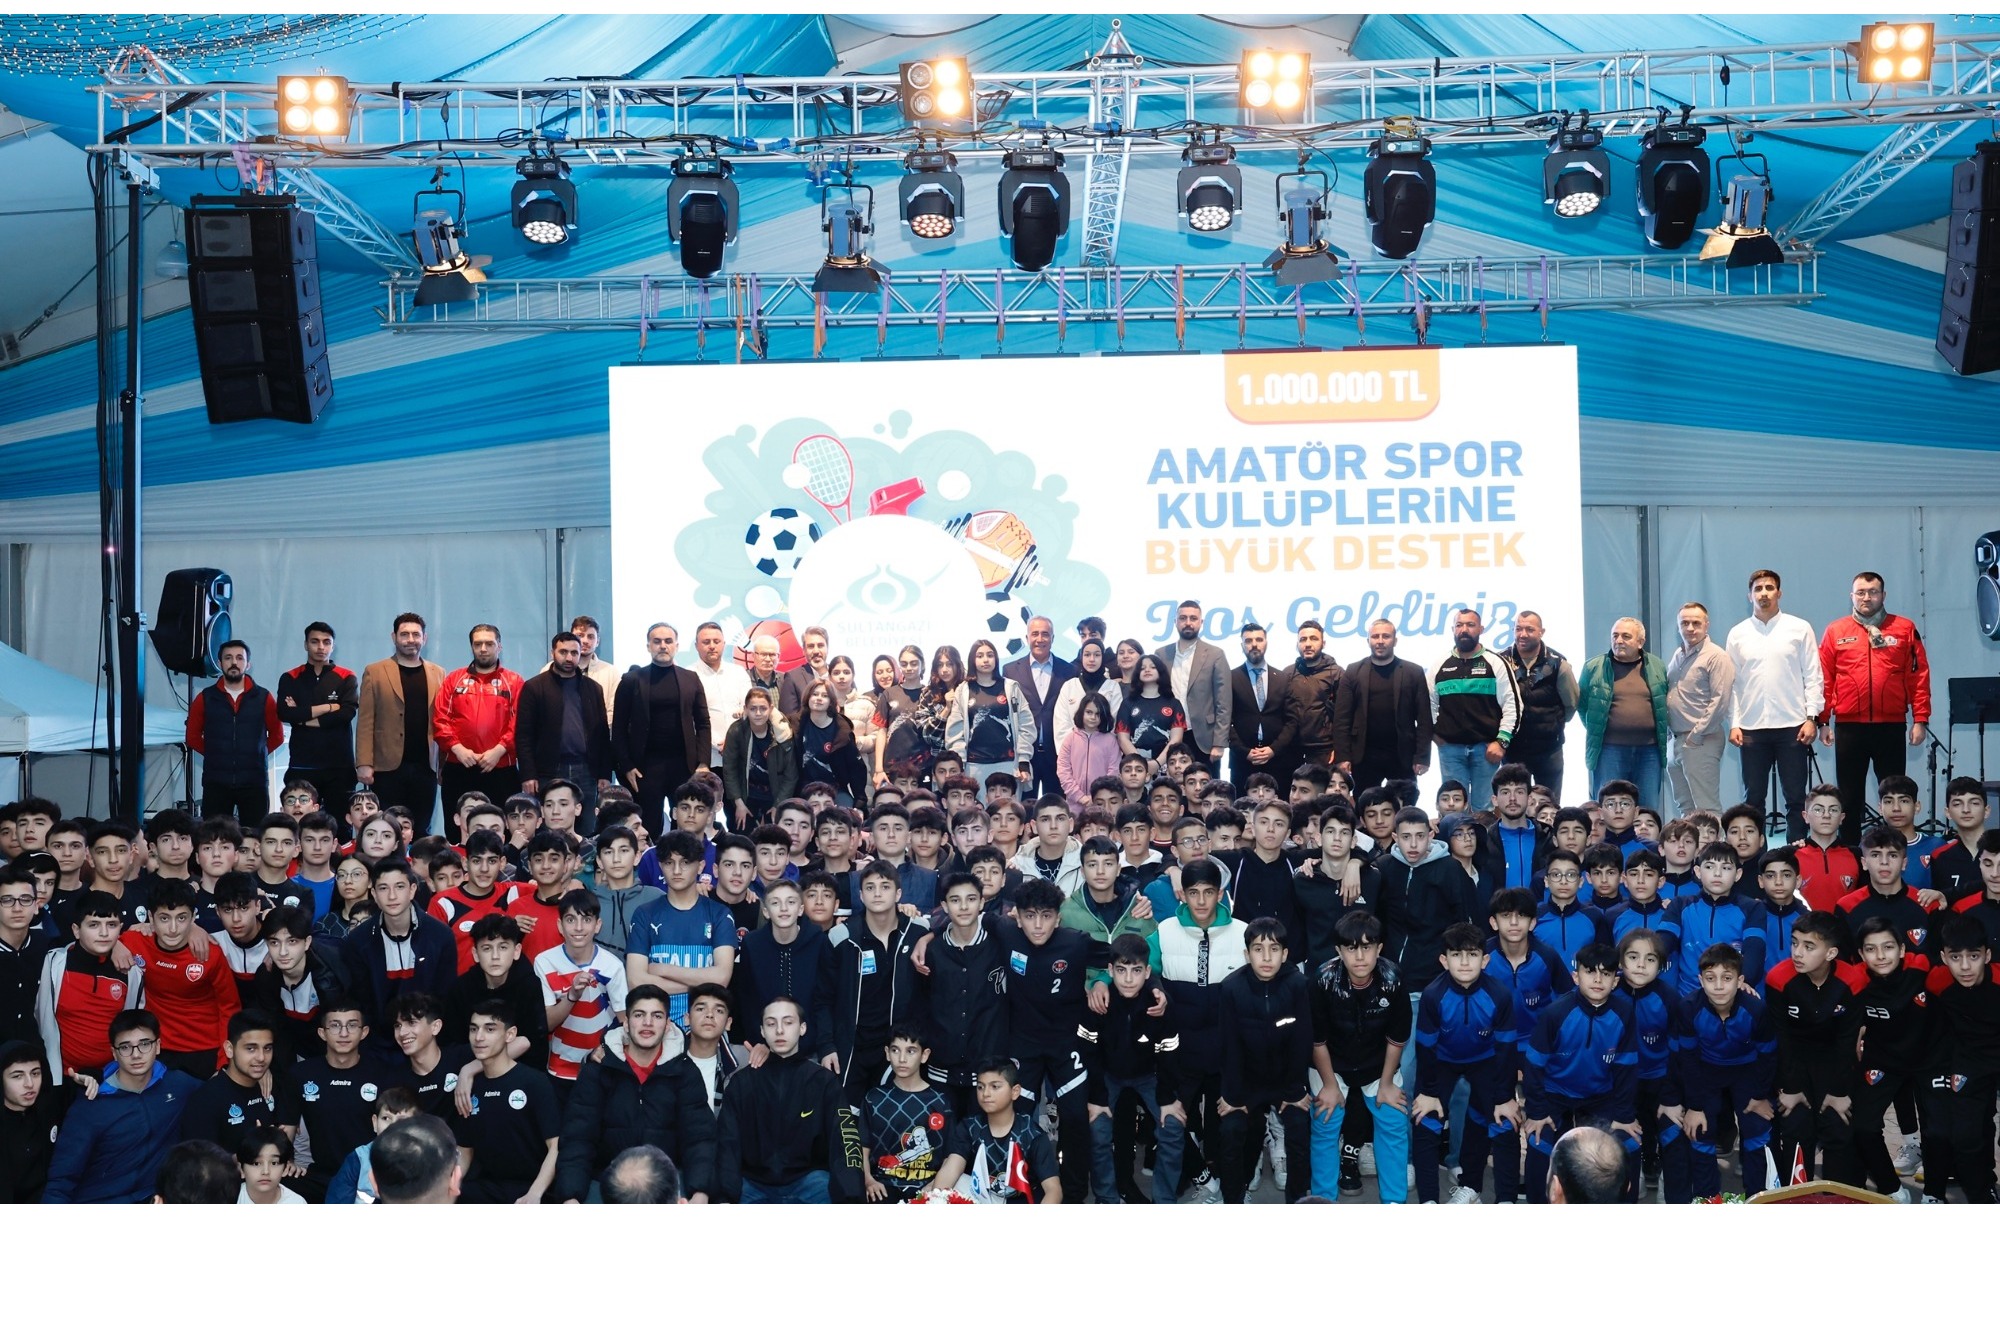 Sultangazi Belediyesi’nden amatör spor kulüplerine 1 milyon TL’lik büyük destek